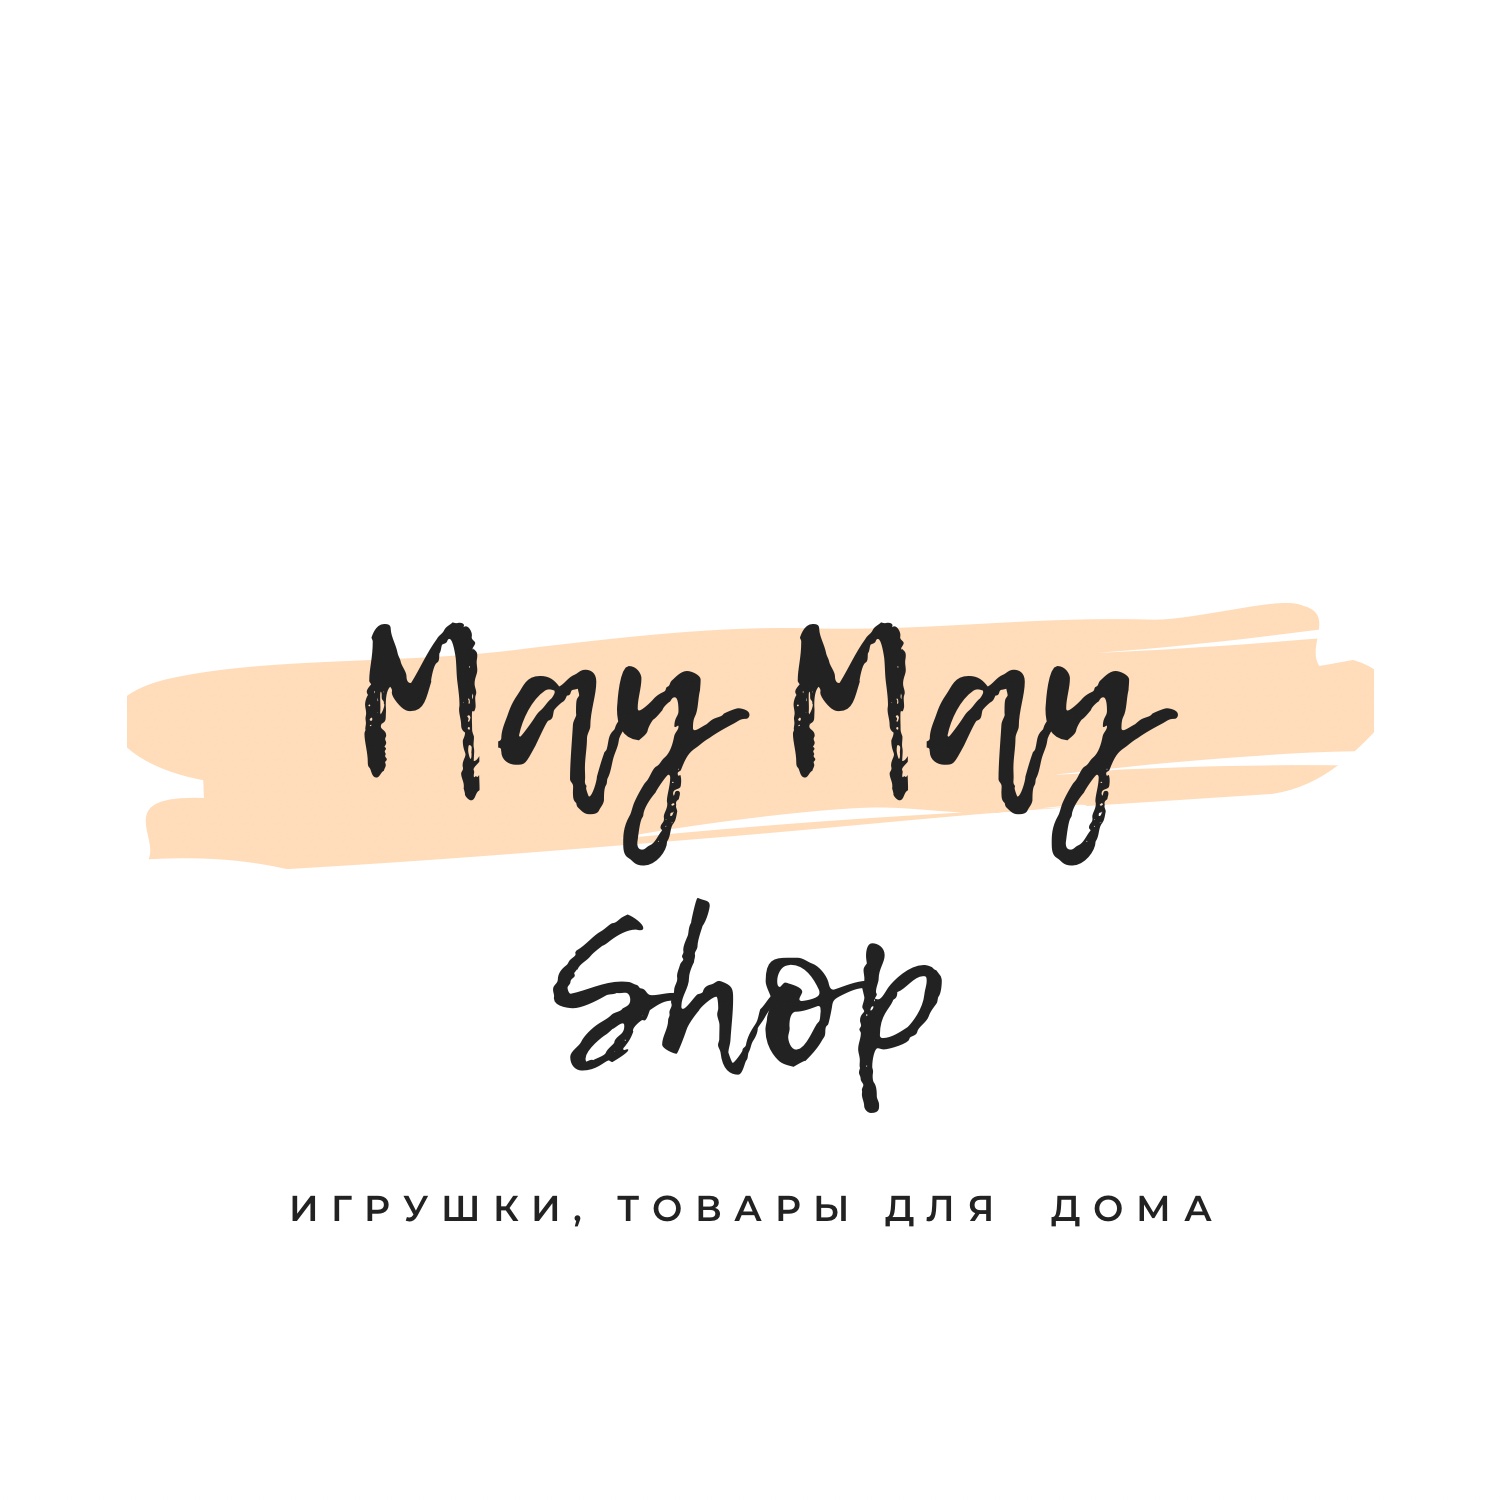 May May Shop